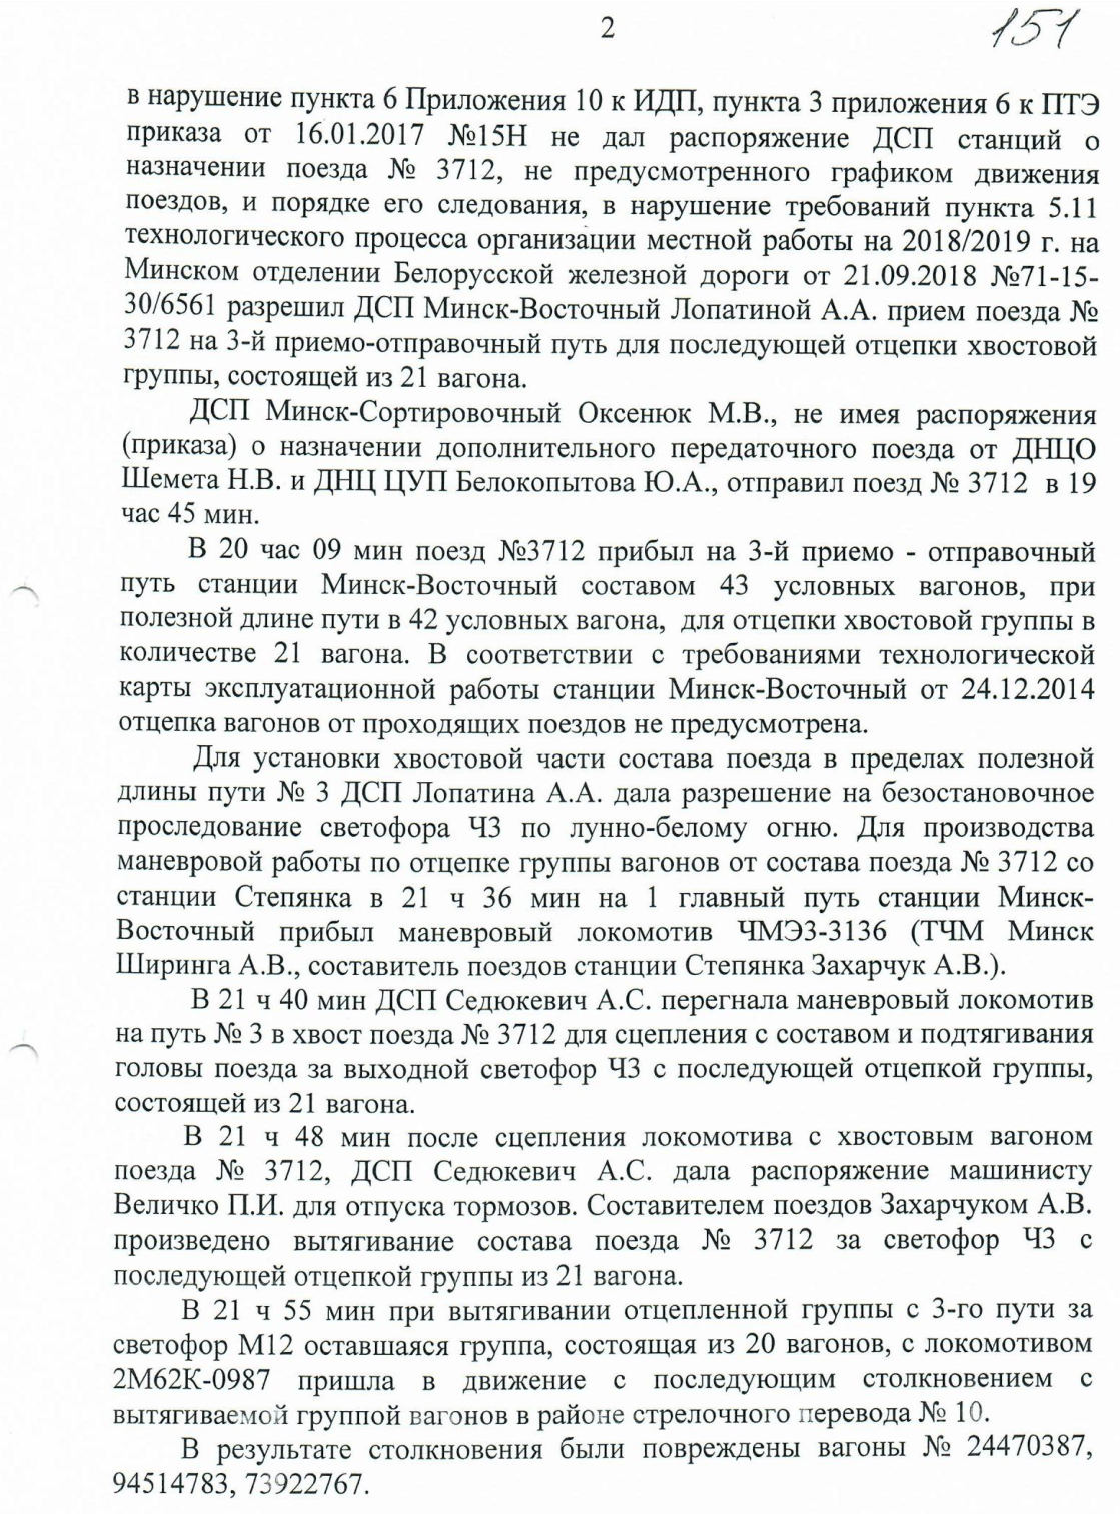 Протокол НОД-1 (Дашкевич) столкновение М-Вост (Страница 2)